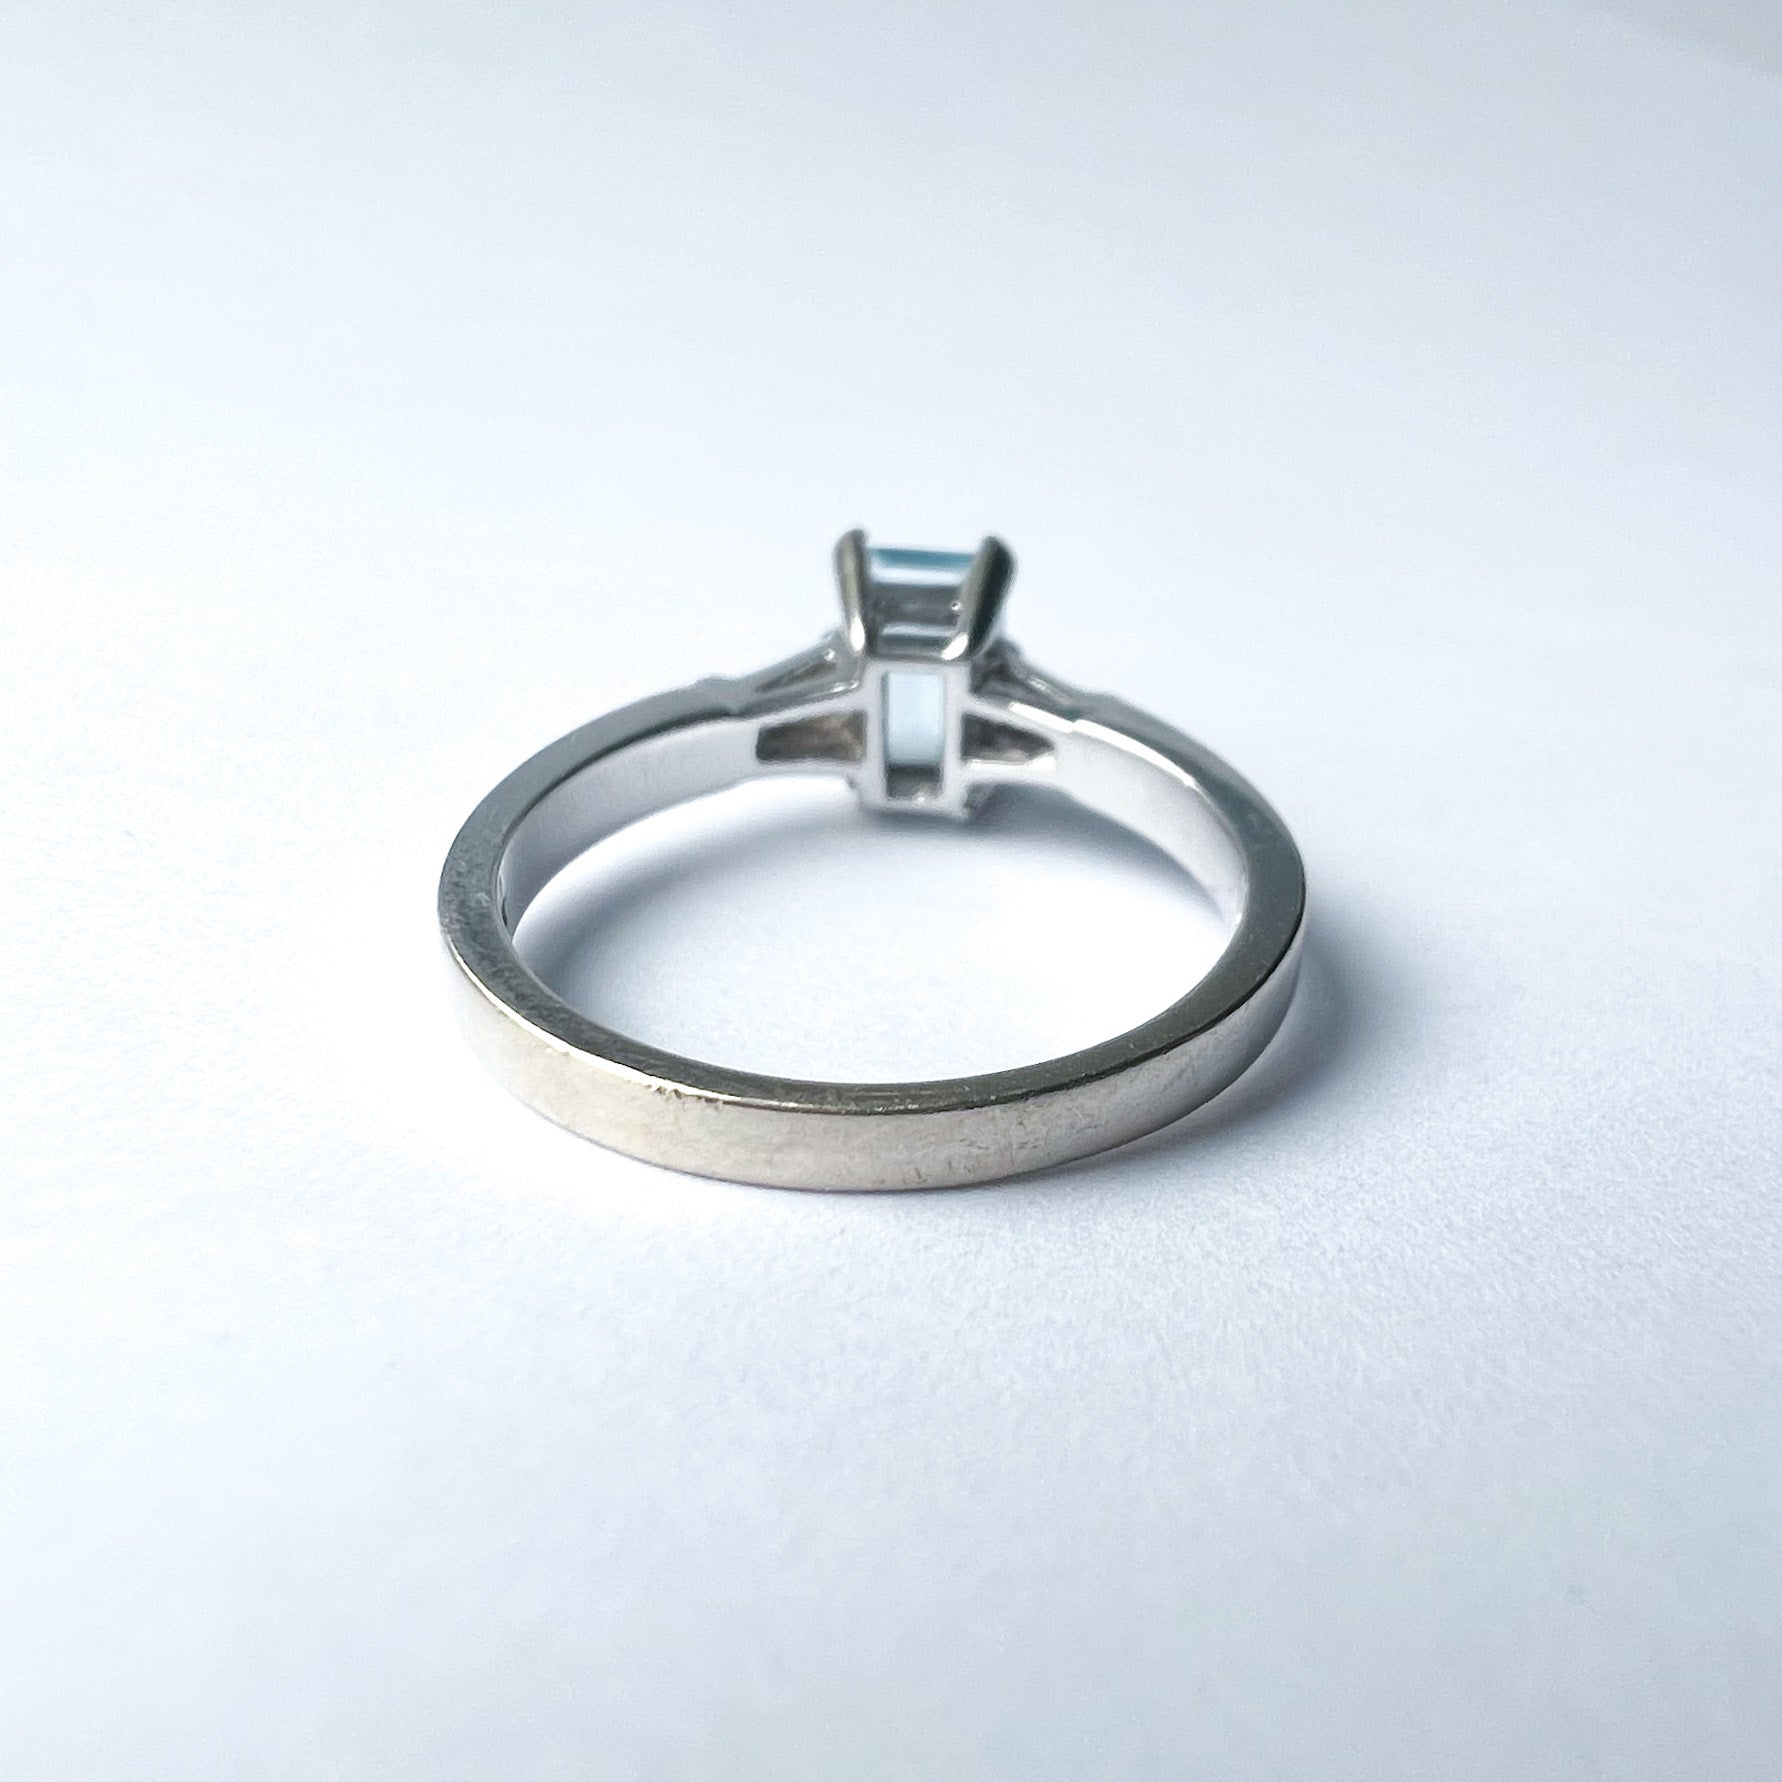 Aquamarine and Diamond 18ct White Gold Ring